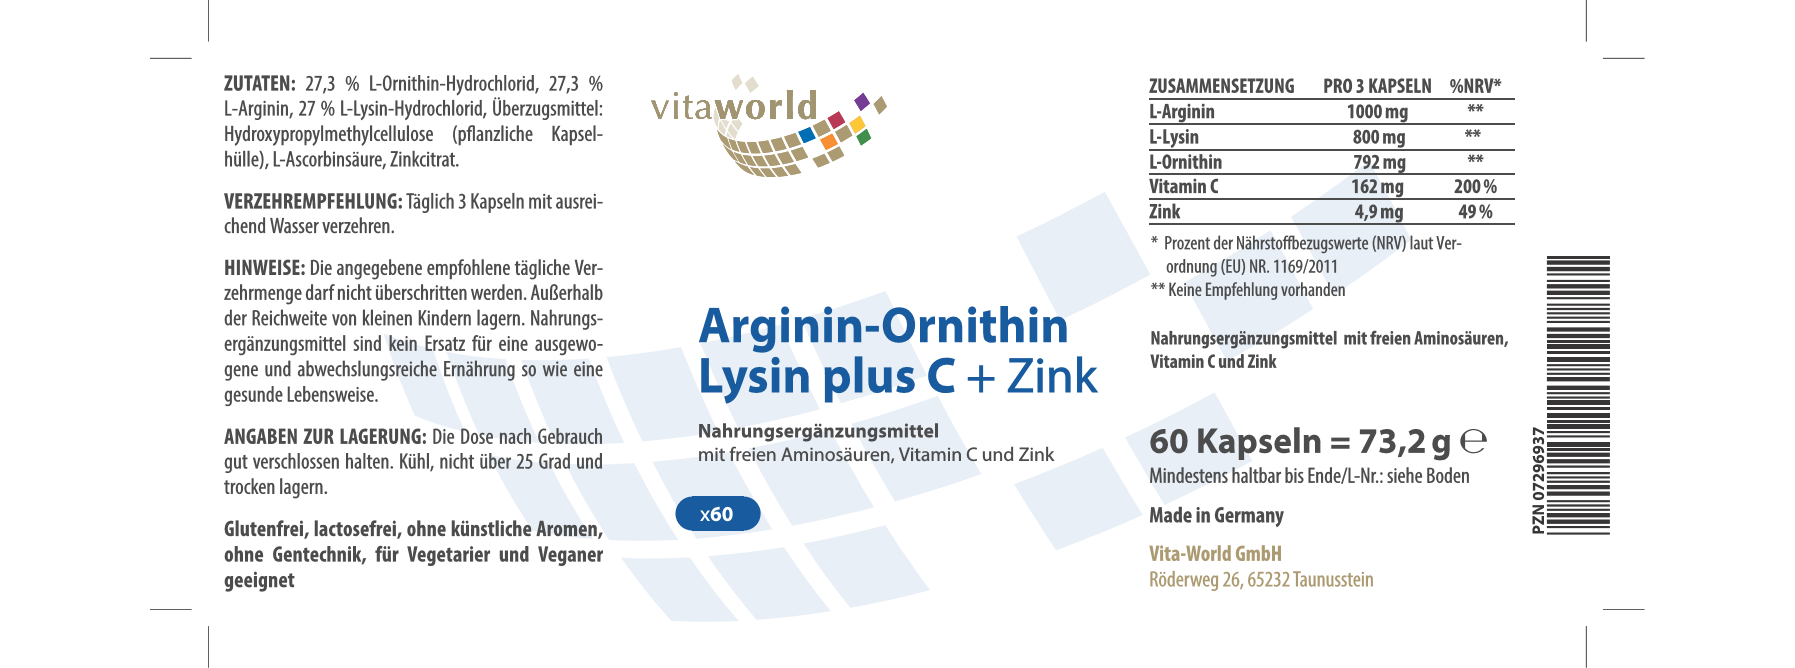 Arginin-Ornithin-Lysin + C + Zink (60 Kps)